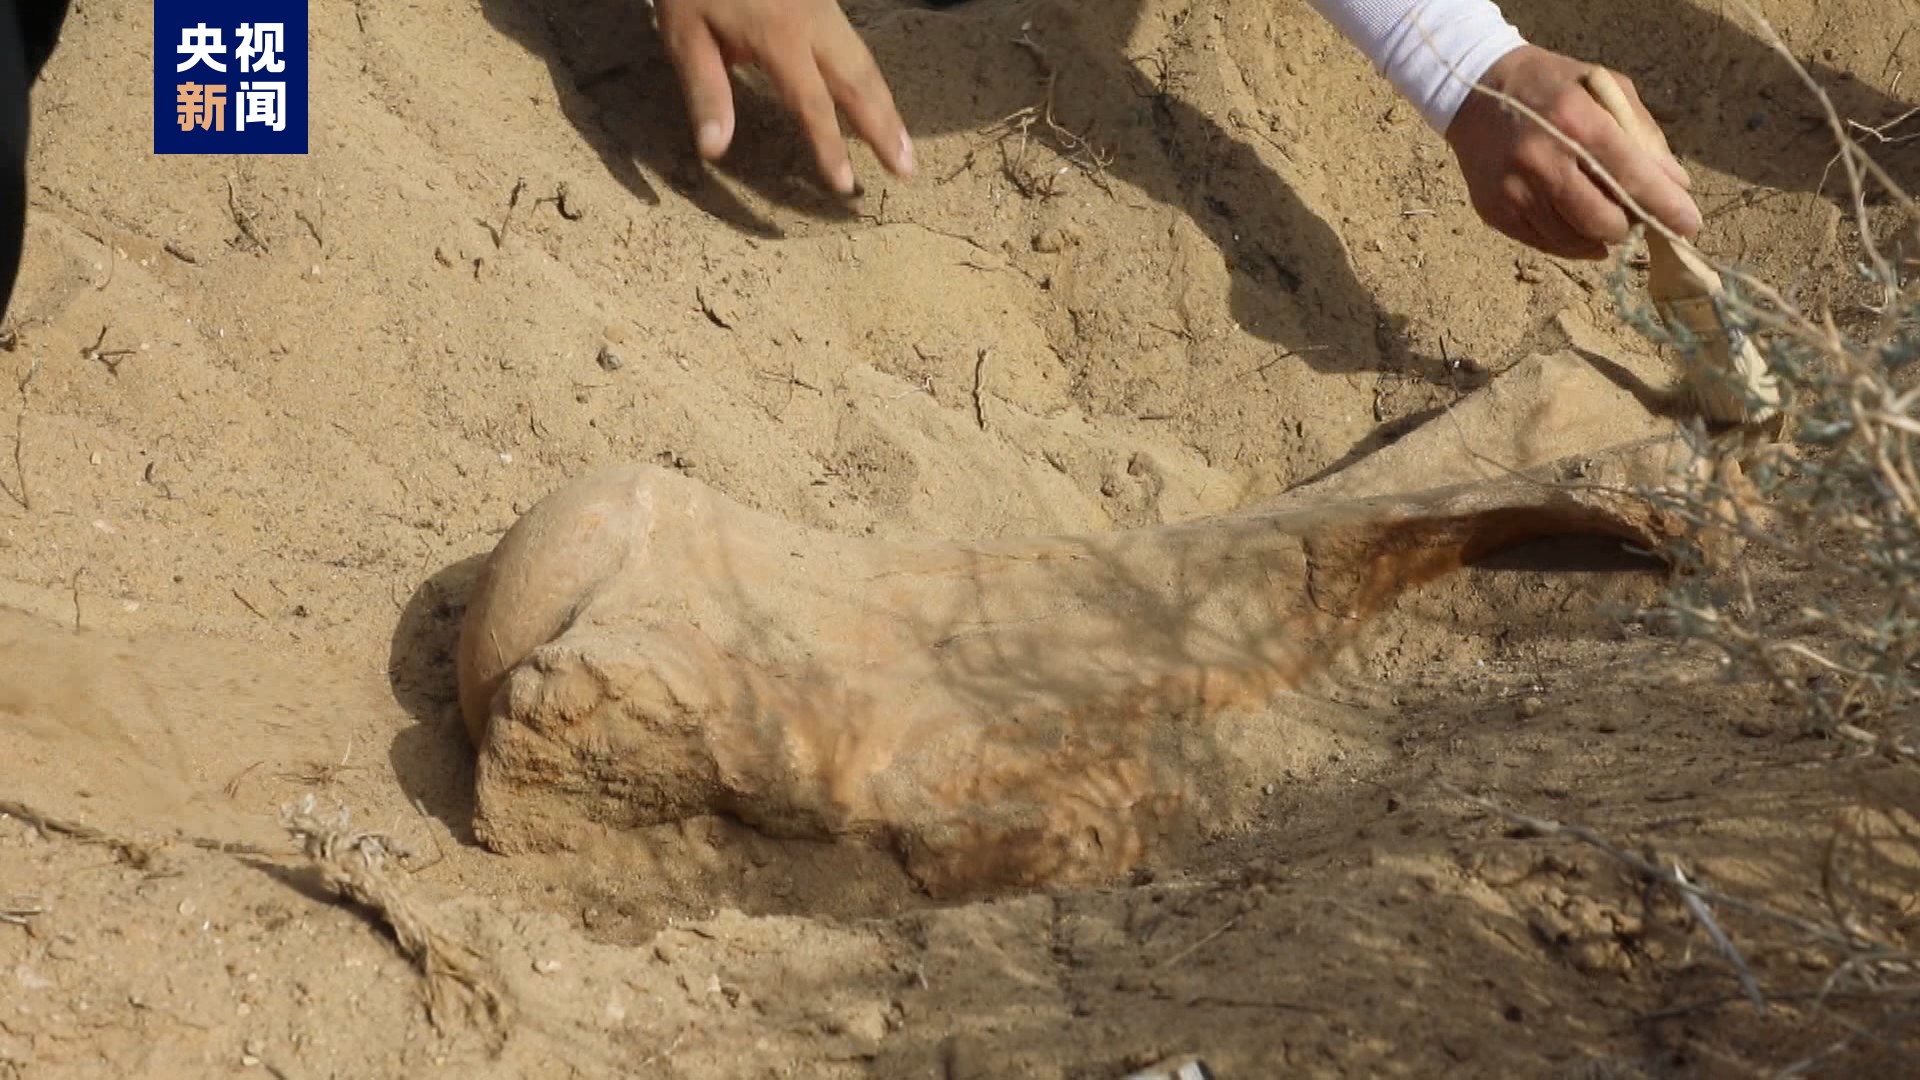 内蒙古苏尼特左旗发现约1500万年前铲齿象肱骨化石